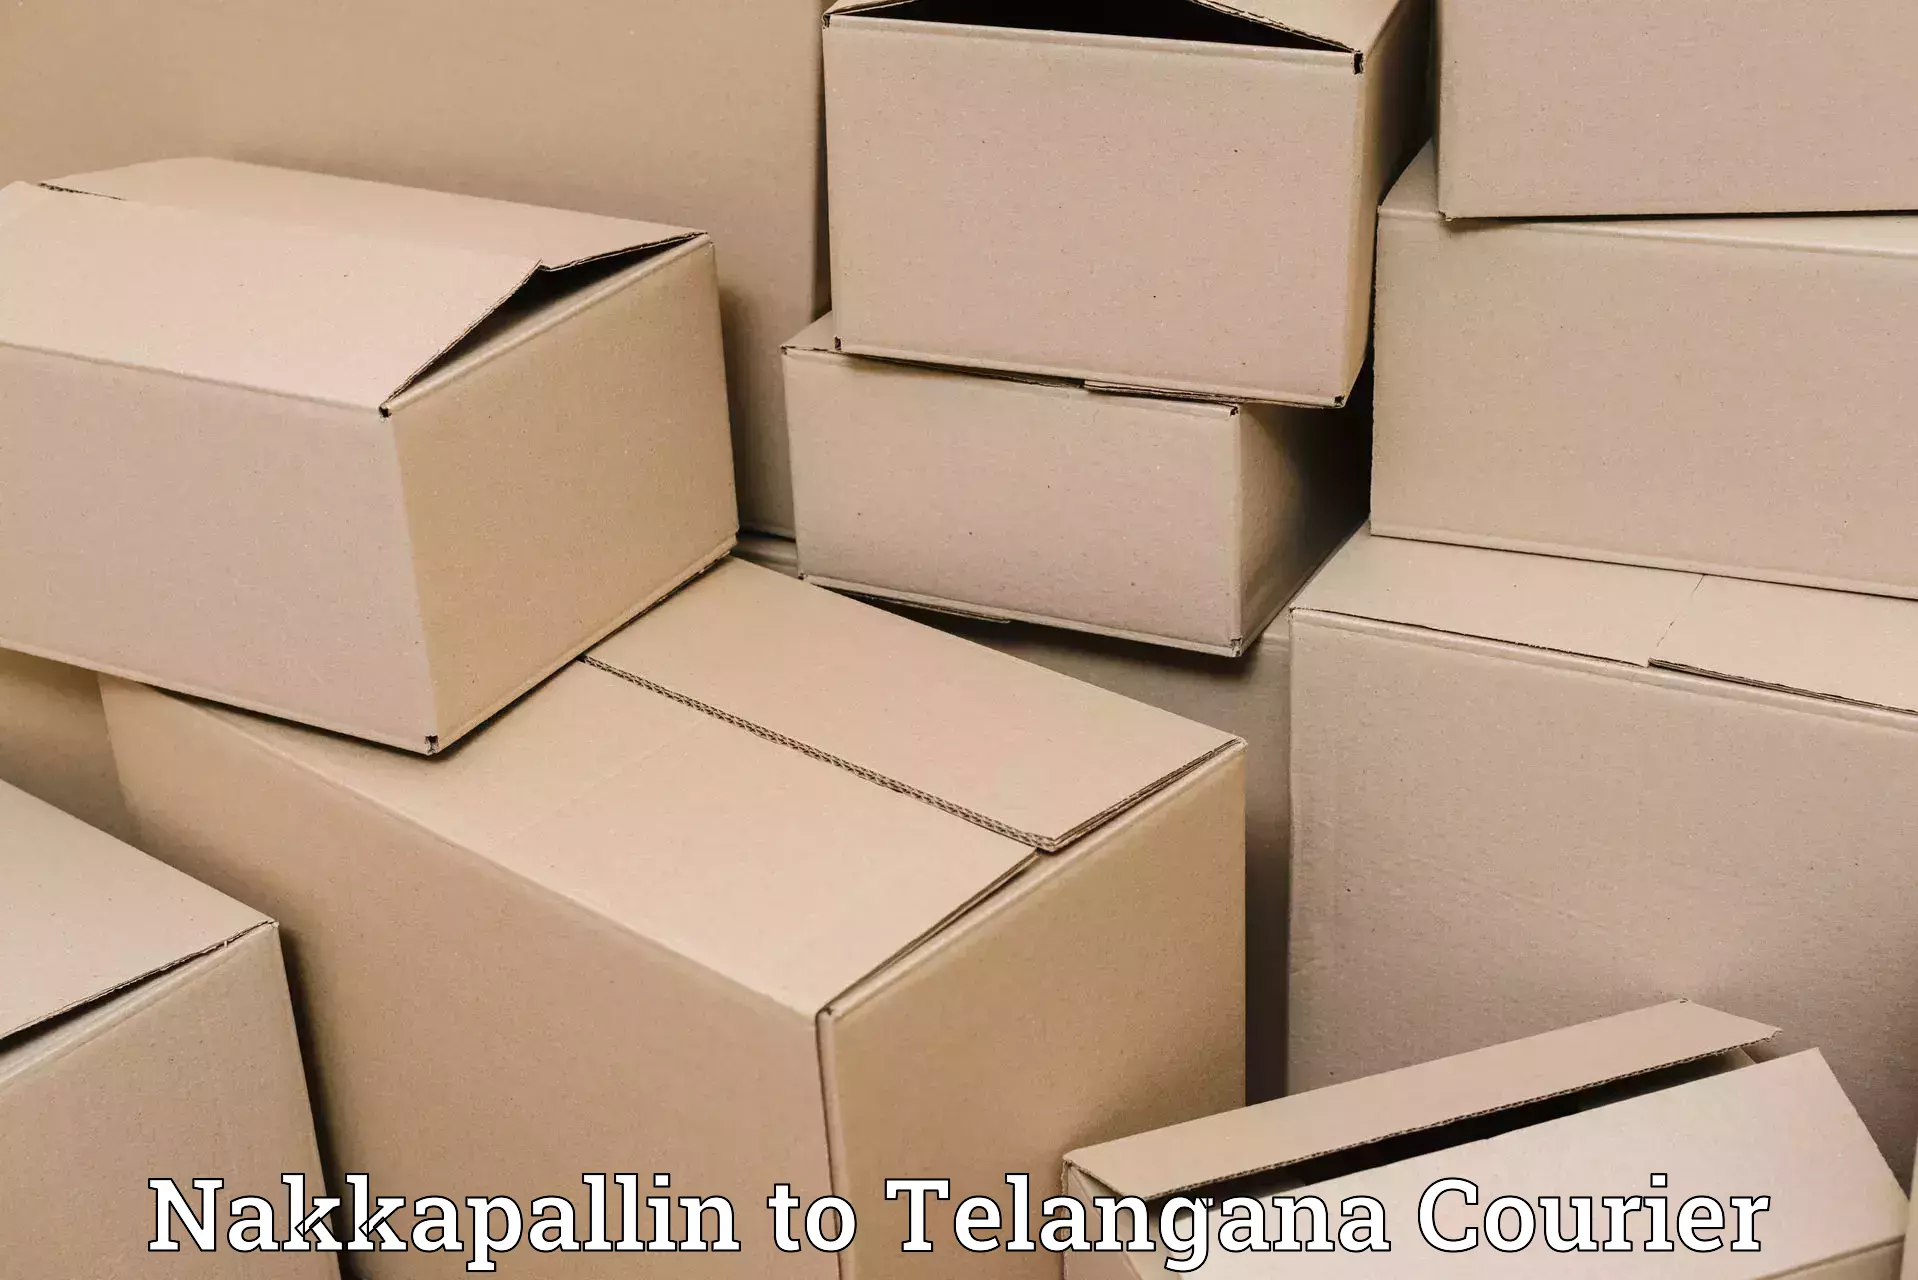 Customer-focused courier Nakkapallin to Kothakota